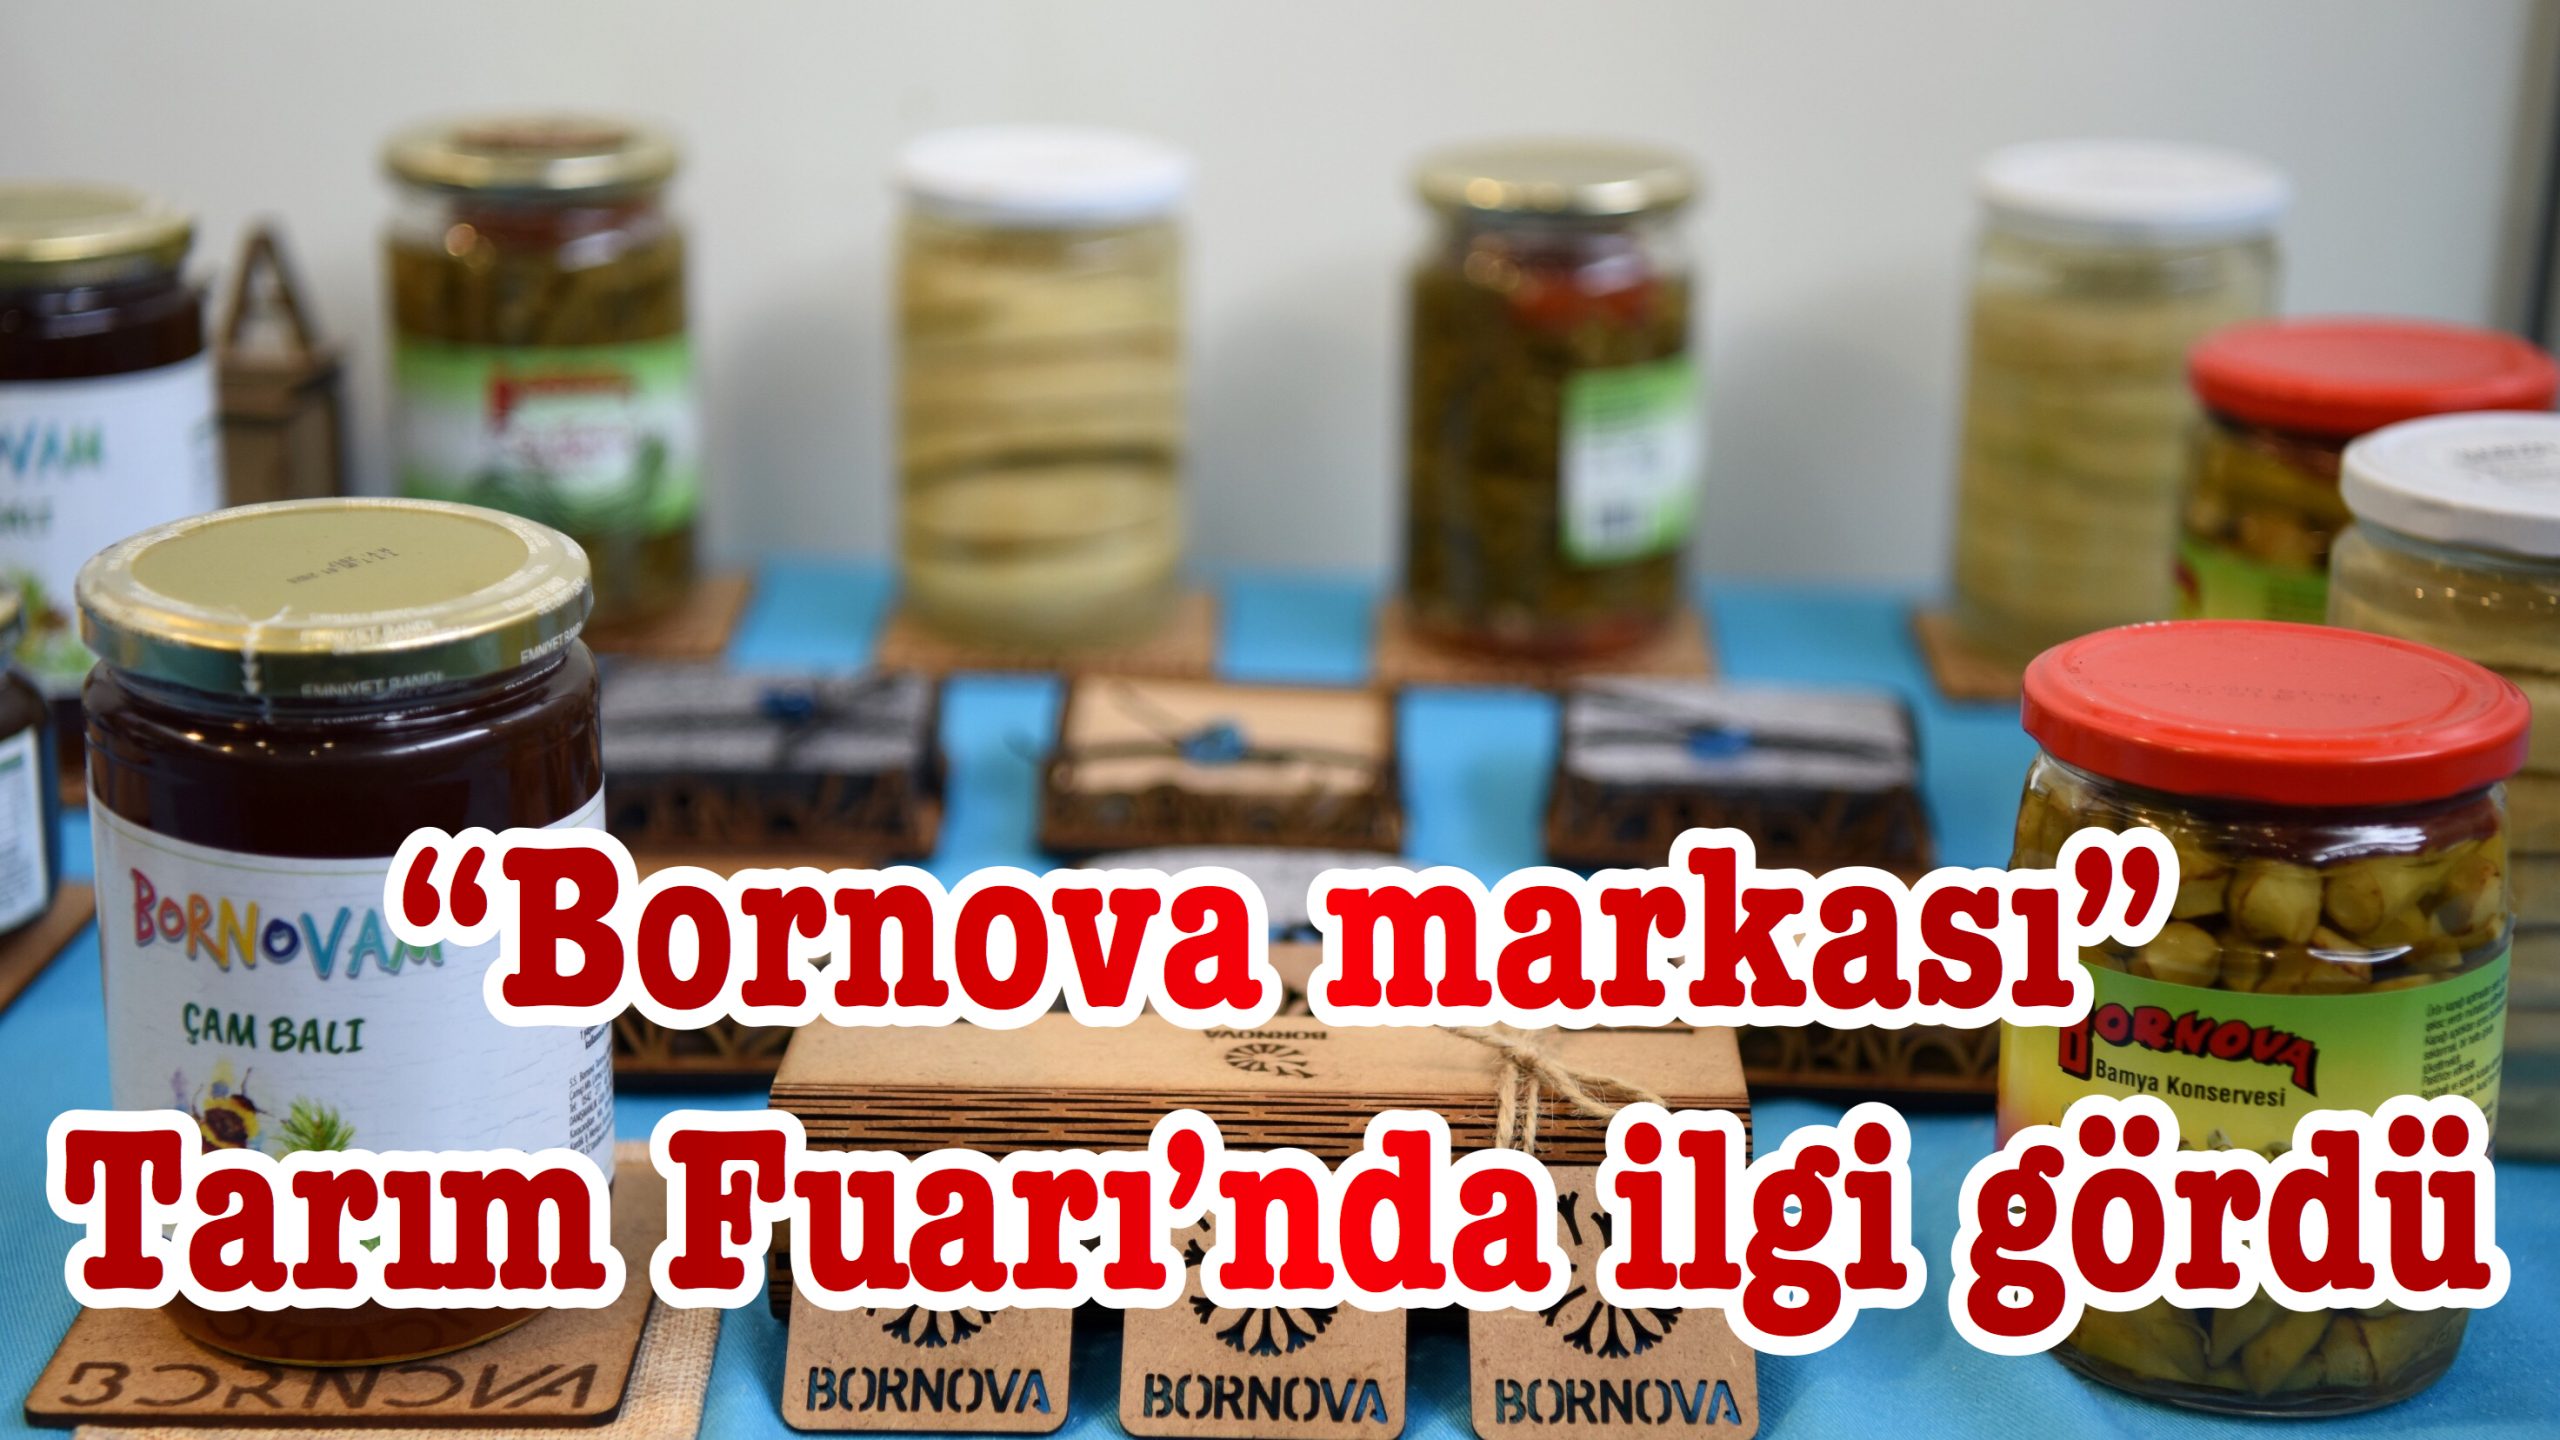 “Bornova markası” Tarım Fuarı’nda ilgi gördü